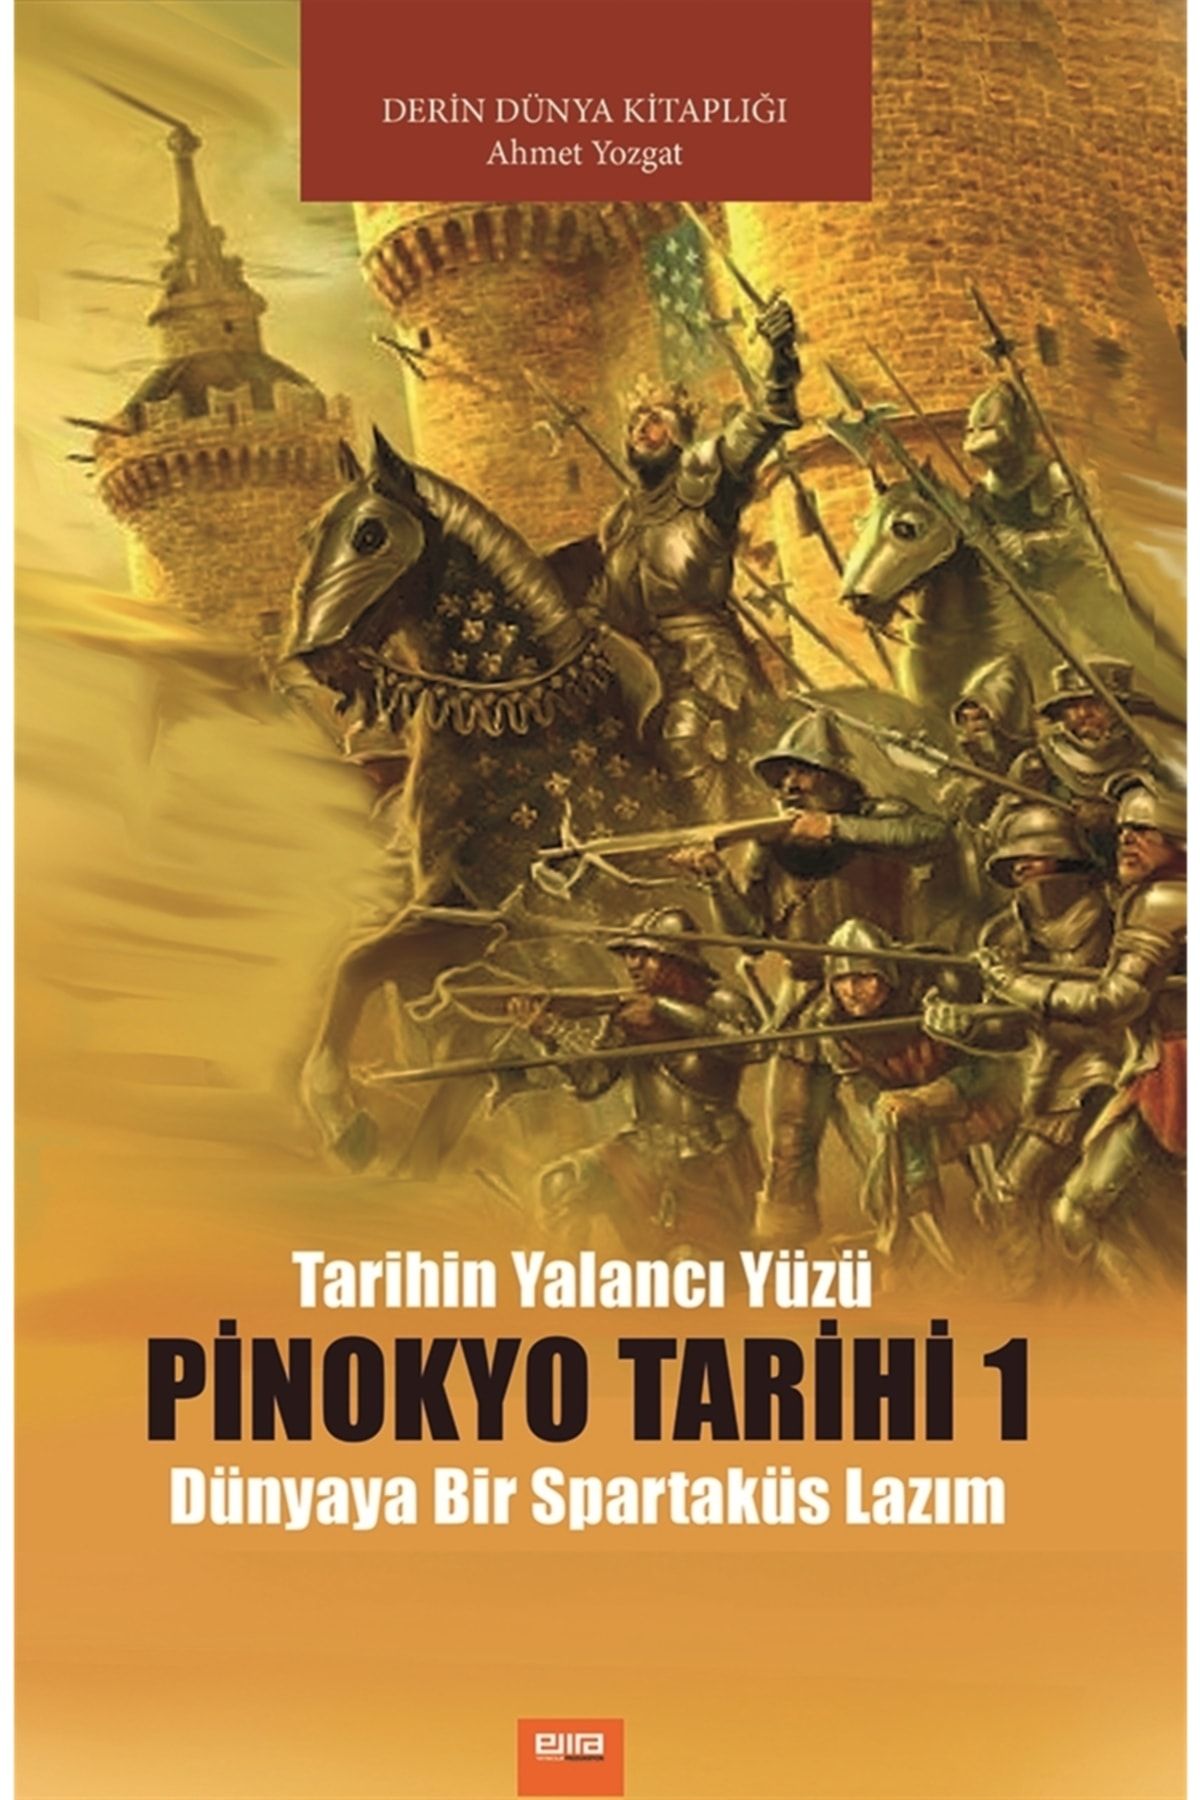 EMANUEL UNGARO Pinokyo Tarihi 1 - Ahmet Yozgat 9786057134318